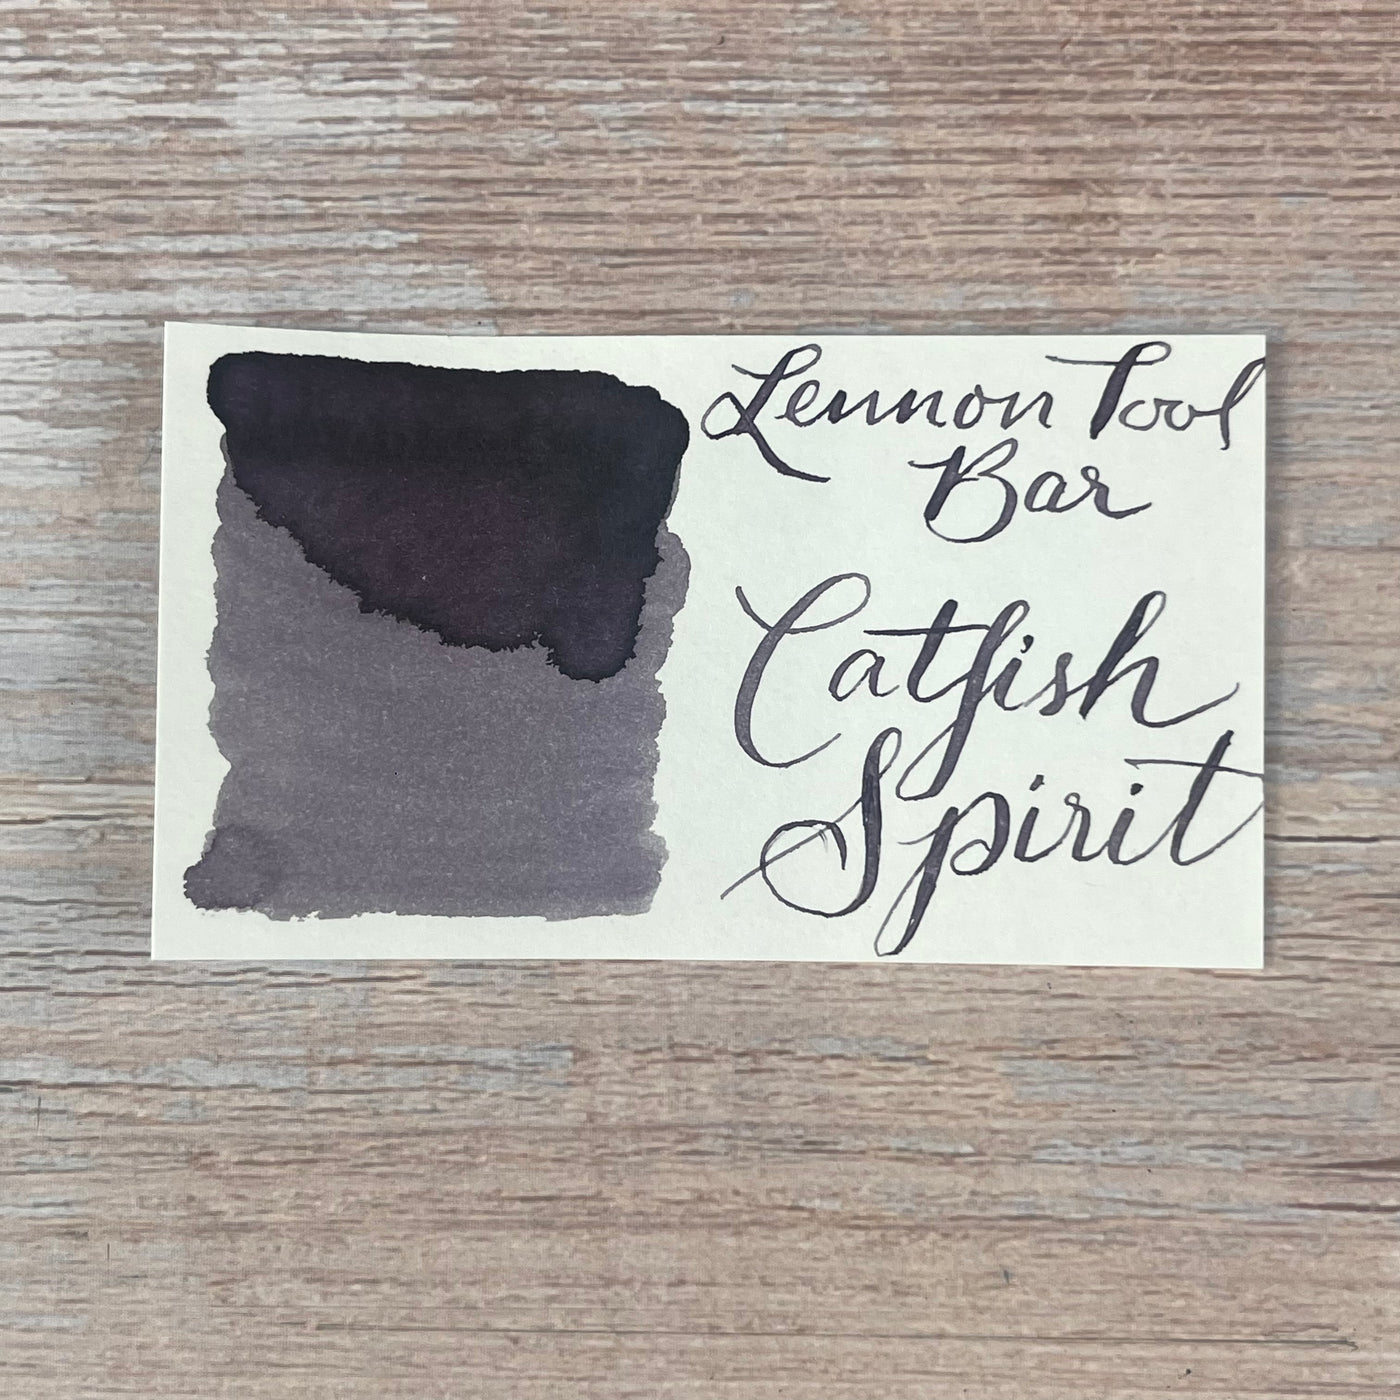 Lennon Tool Bar Catfish Spirit - 30ml Bottled Ink